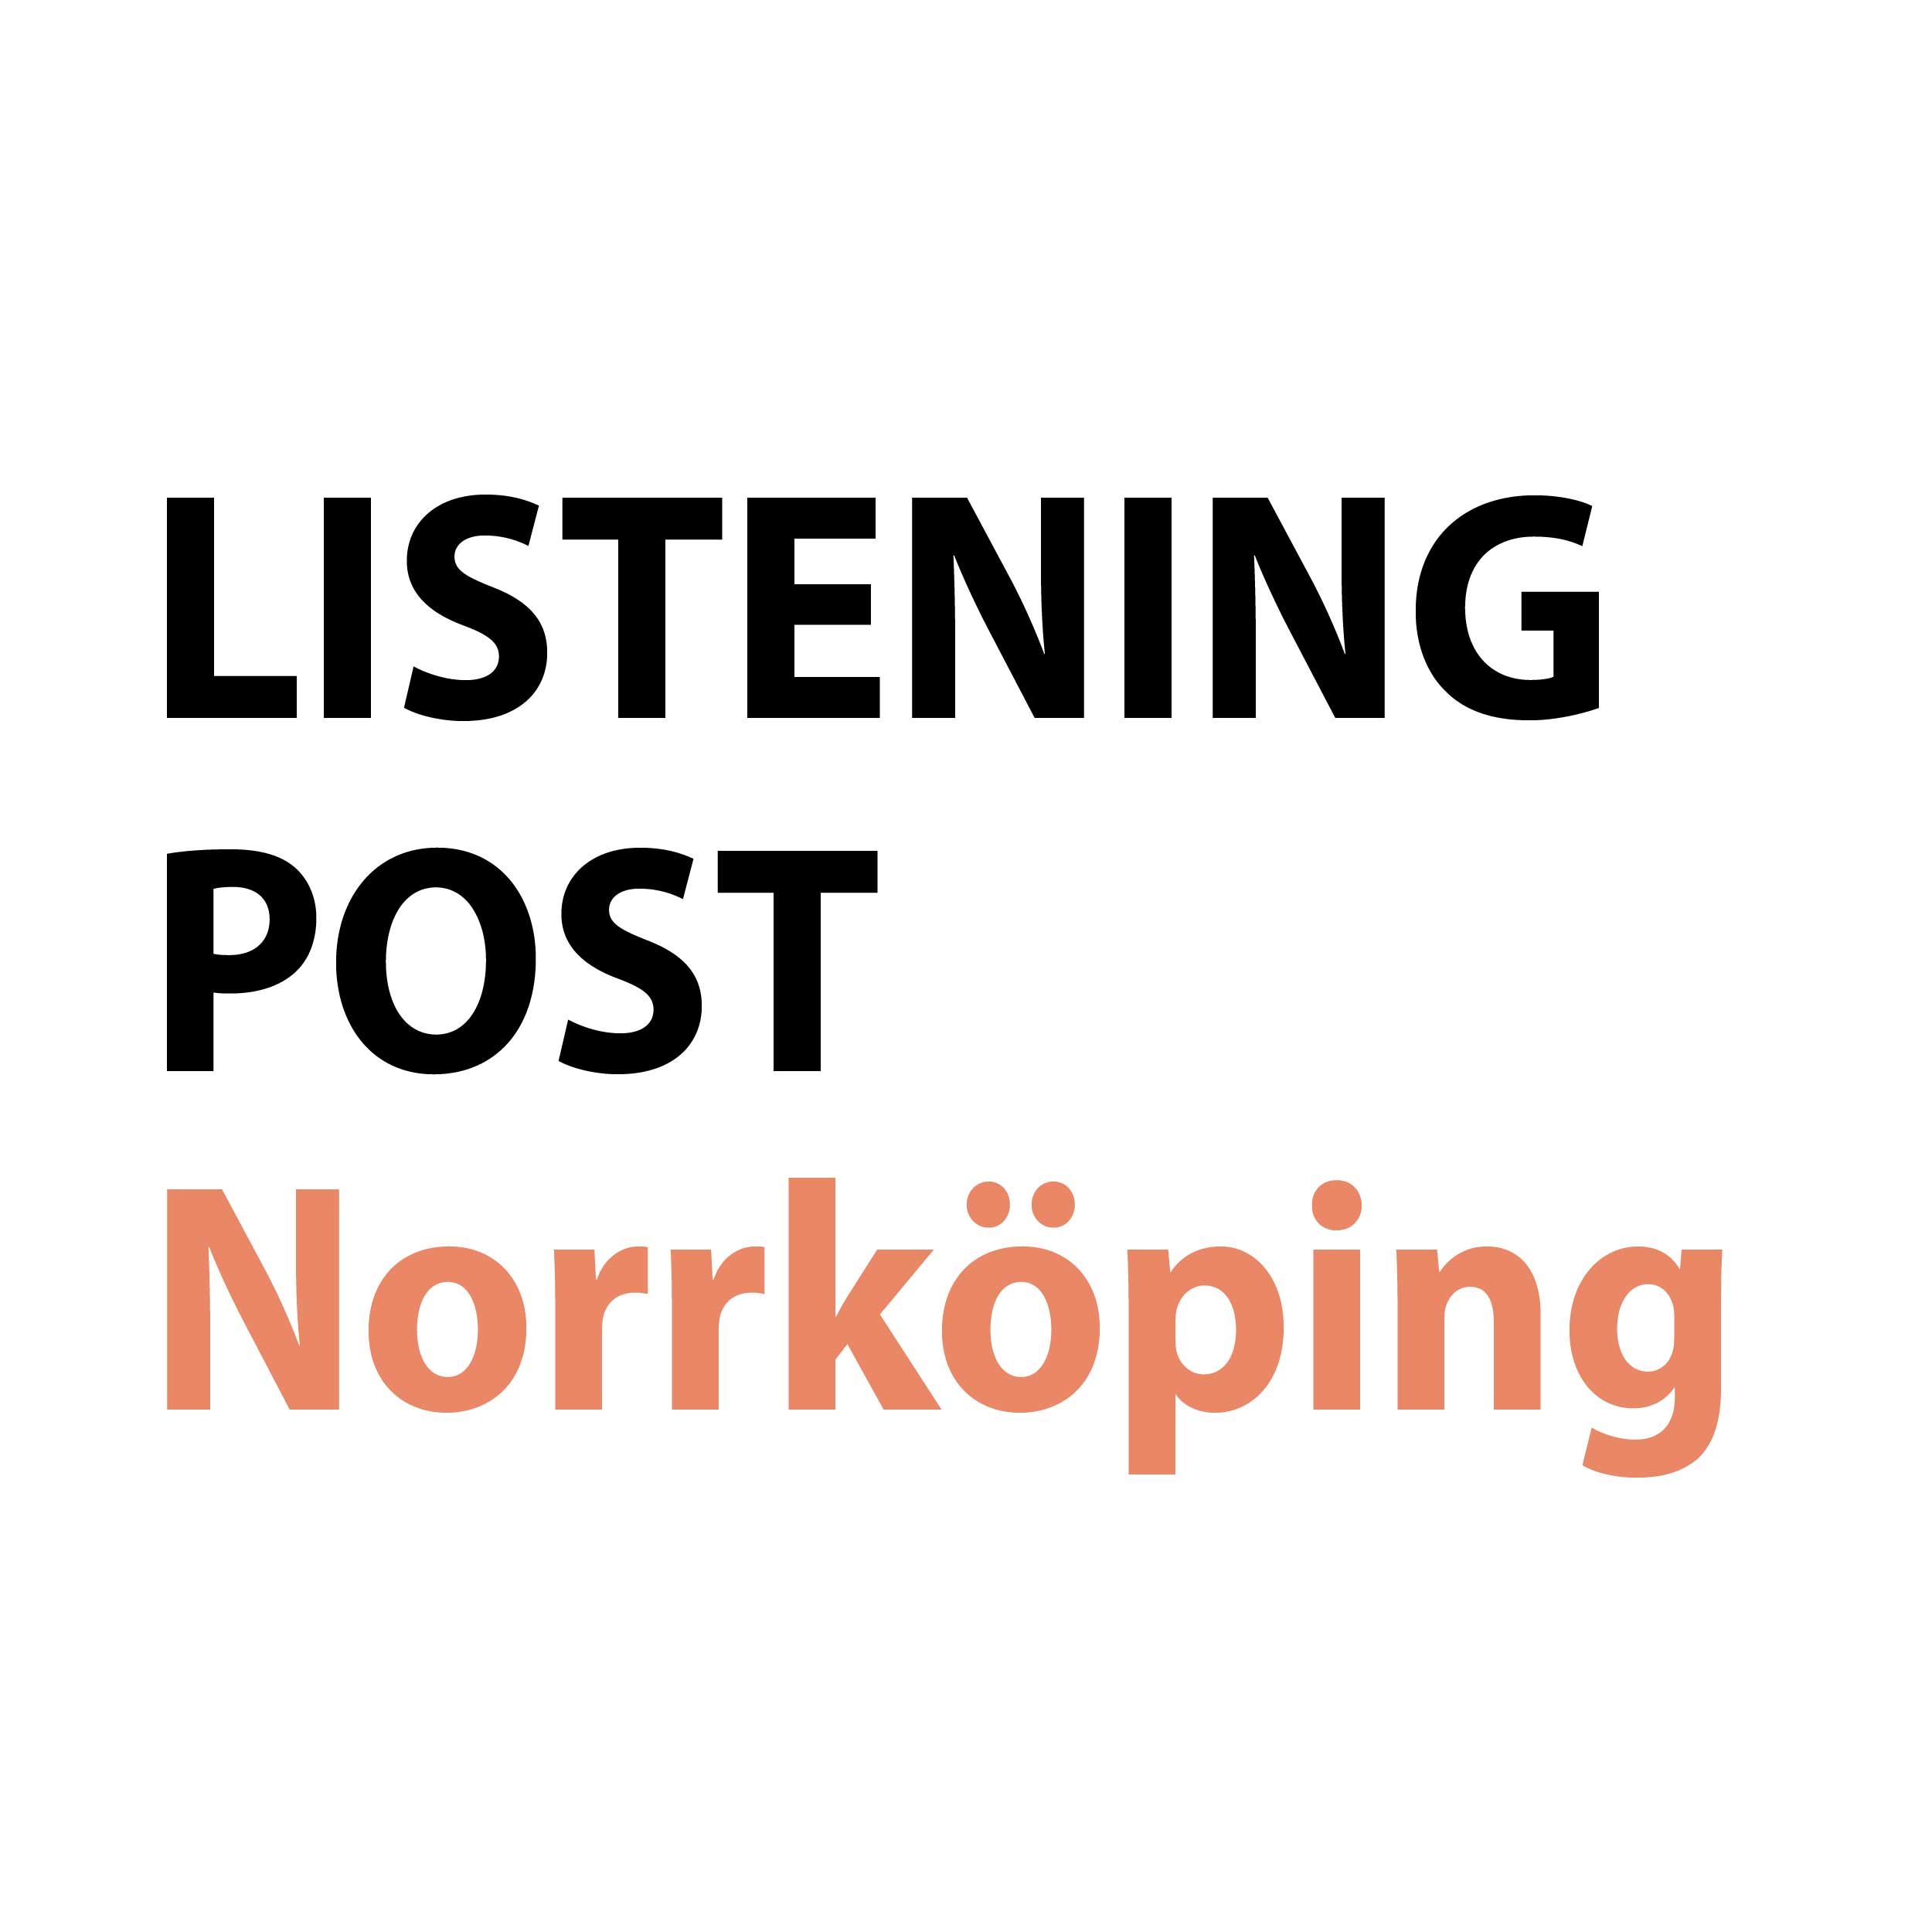 Listening Post Norrköping